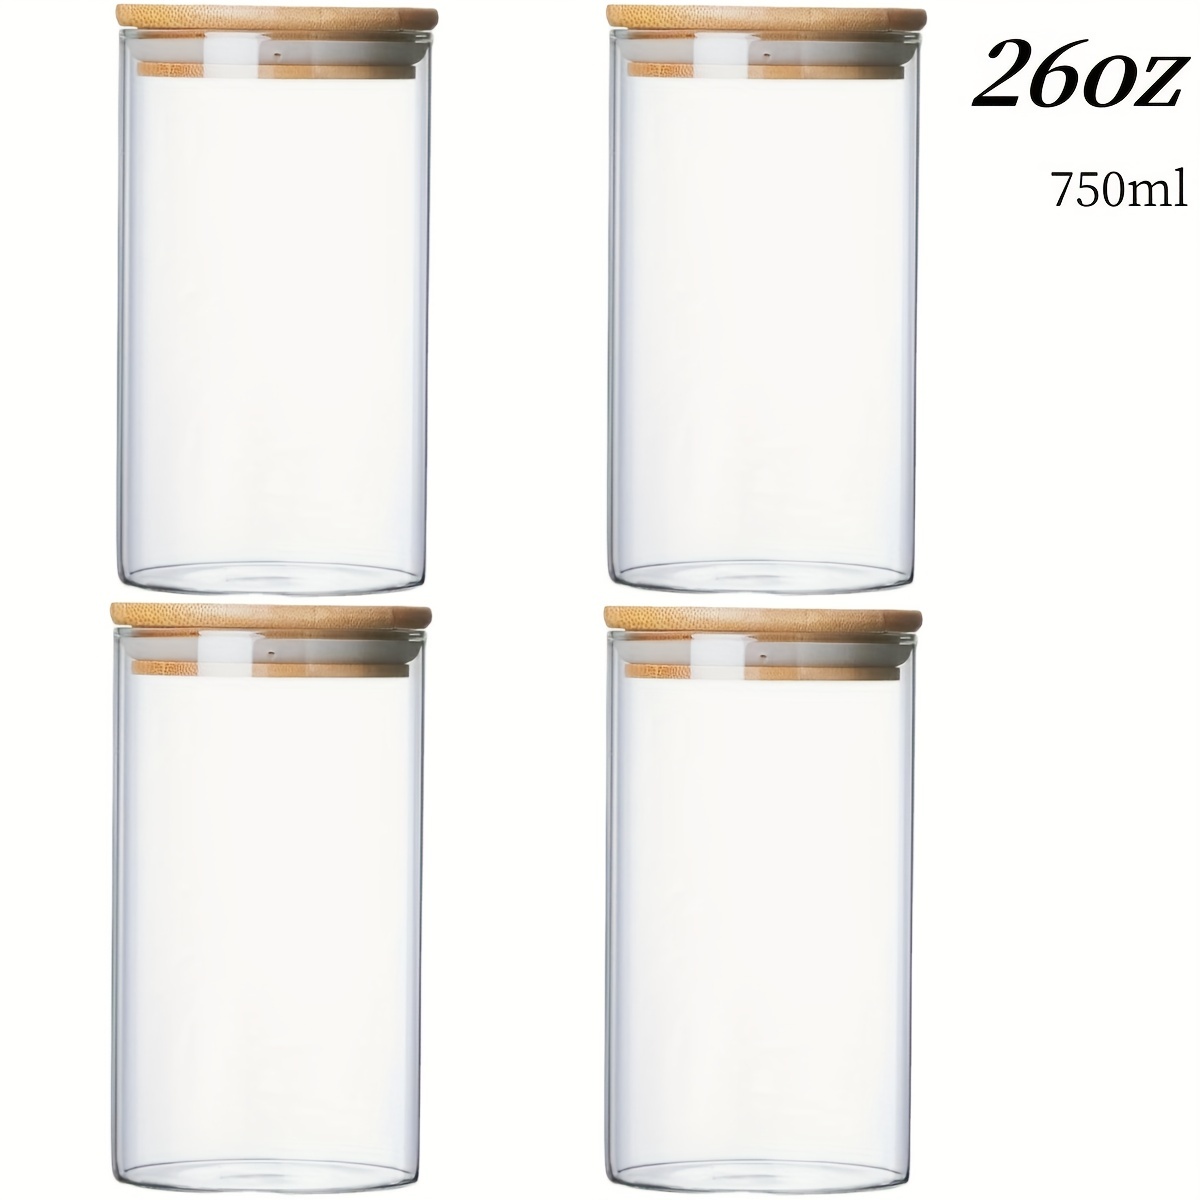 El 'tupper' de vidrio: el recipiente más sano para los alimentos